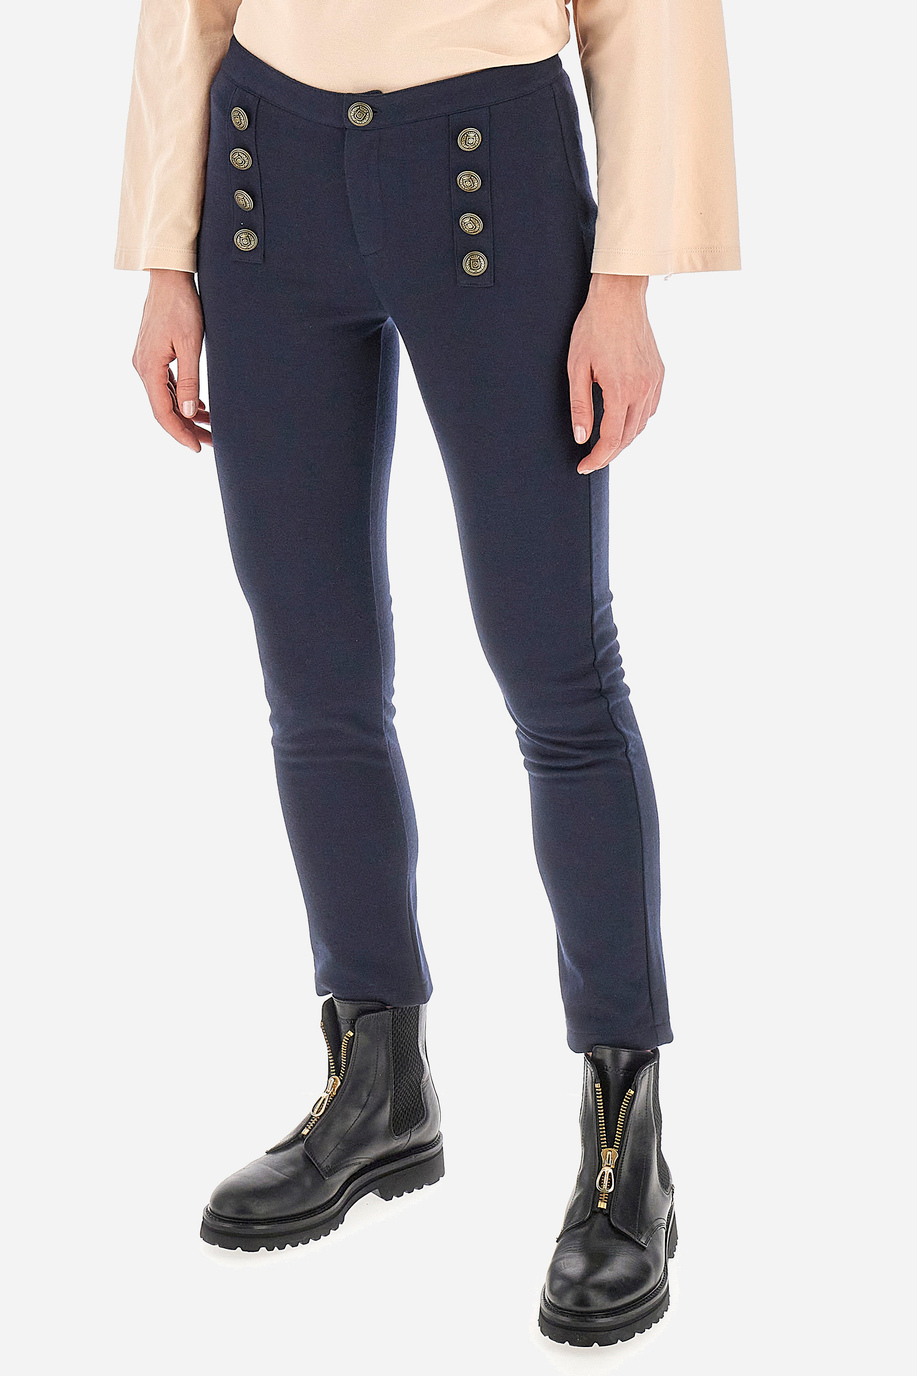 Pantalones mujer de corte recto - Winter - Nuestros favoritos para ella | La Martina - Official Online Shop